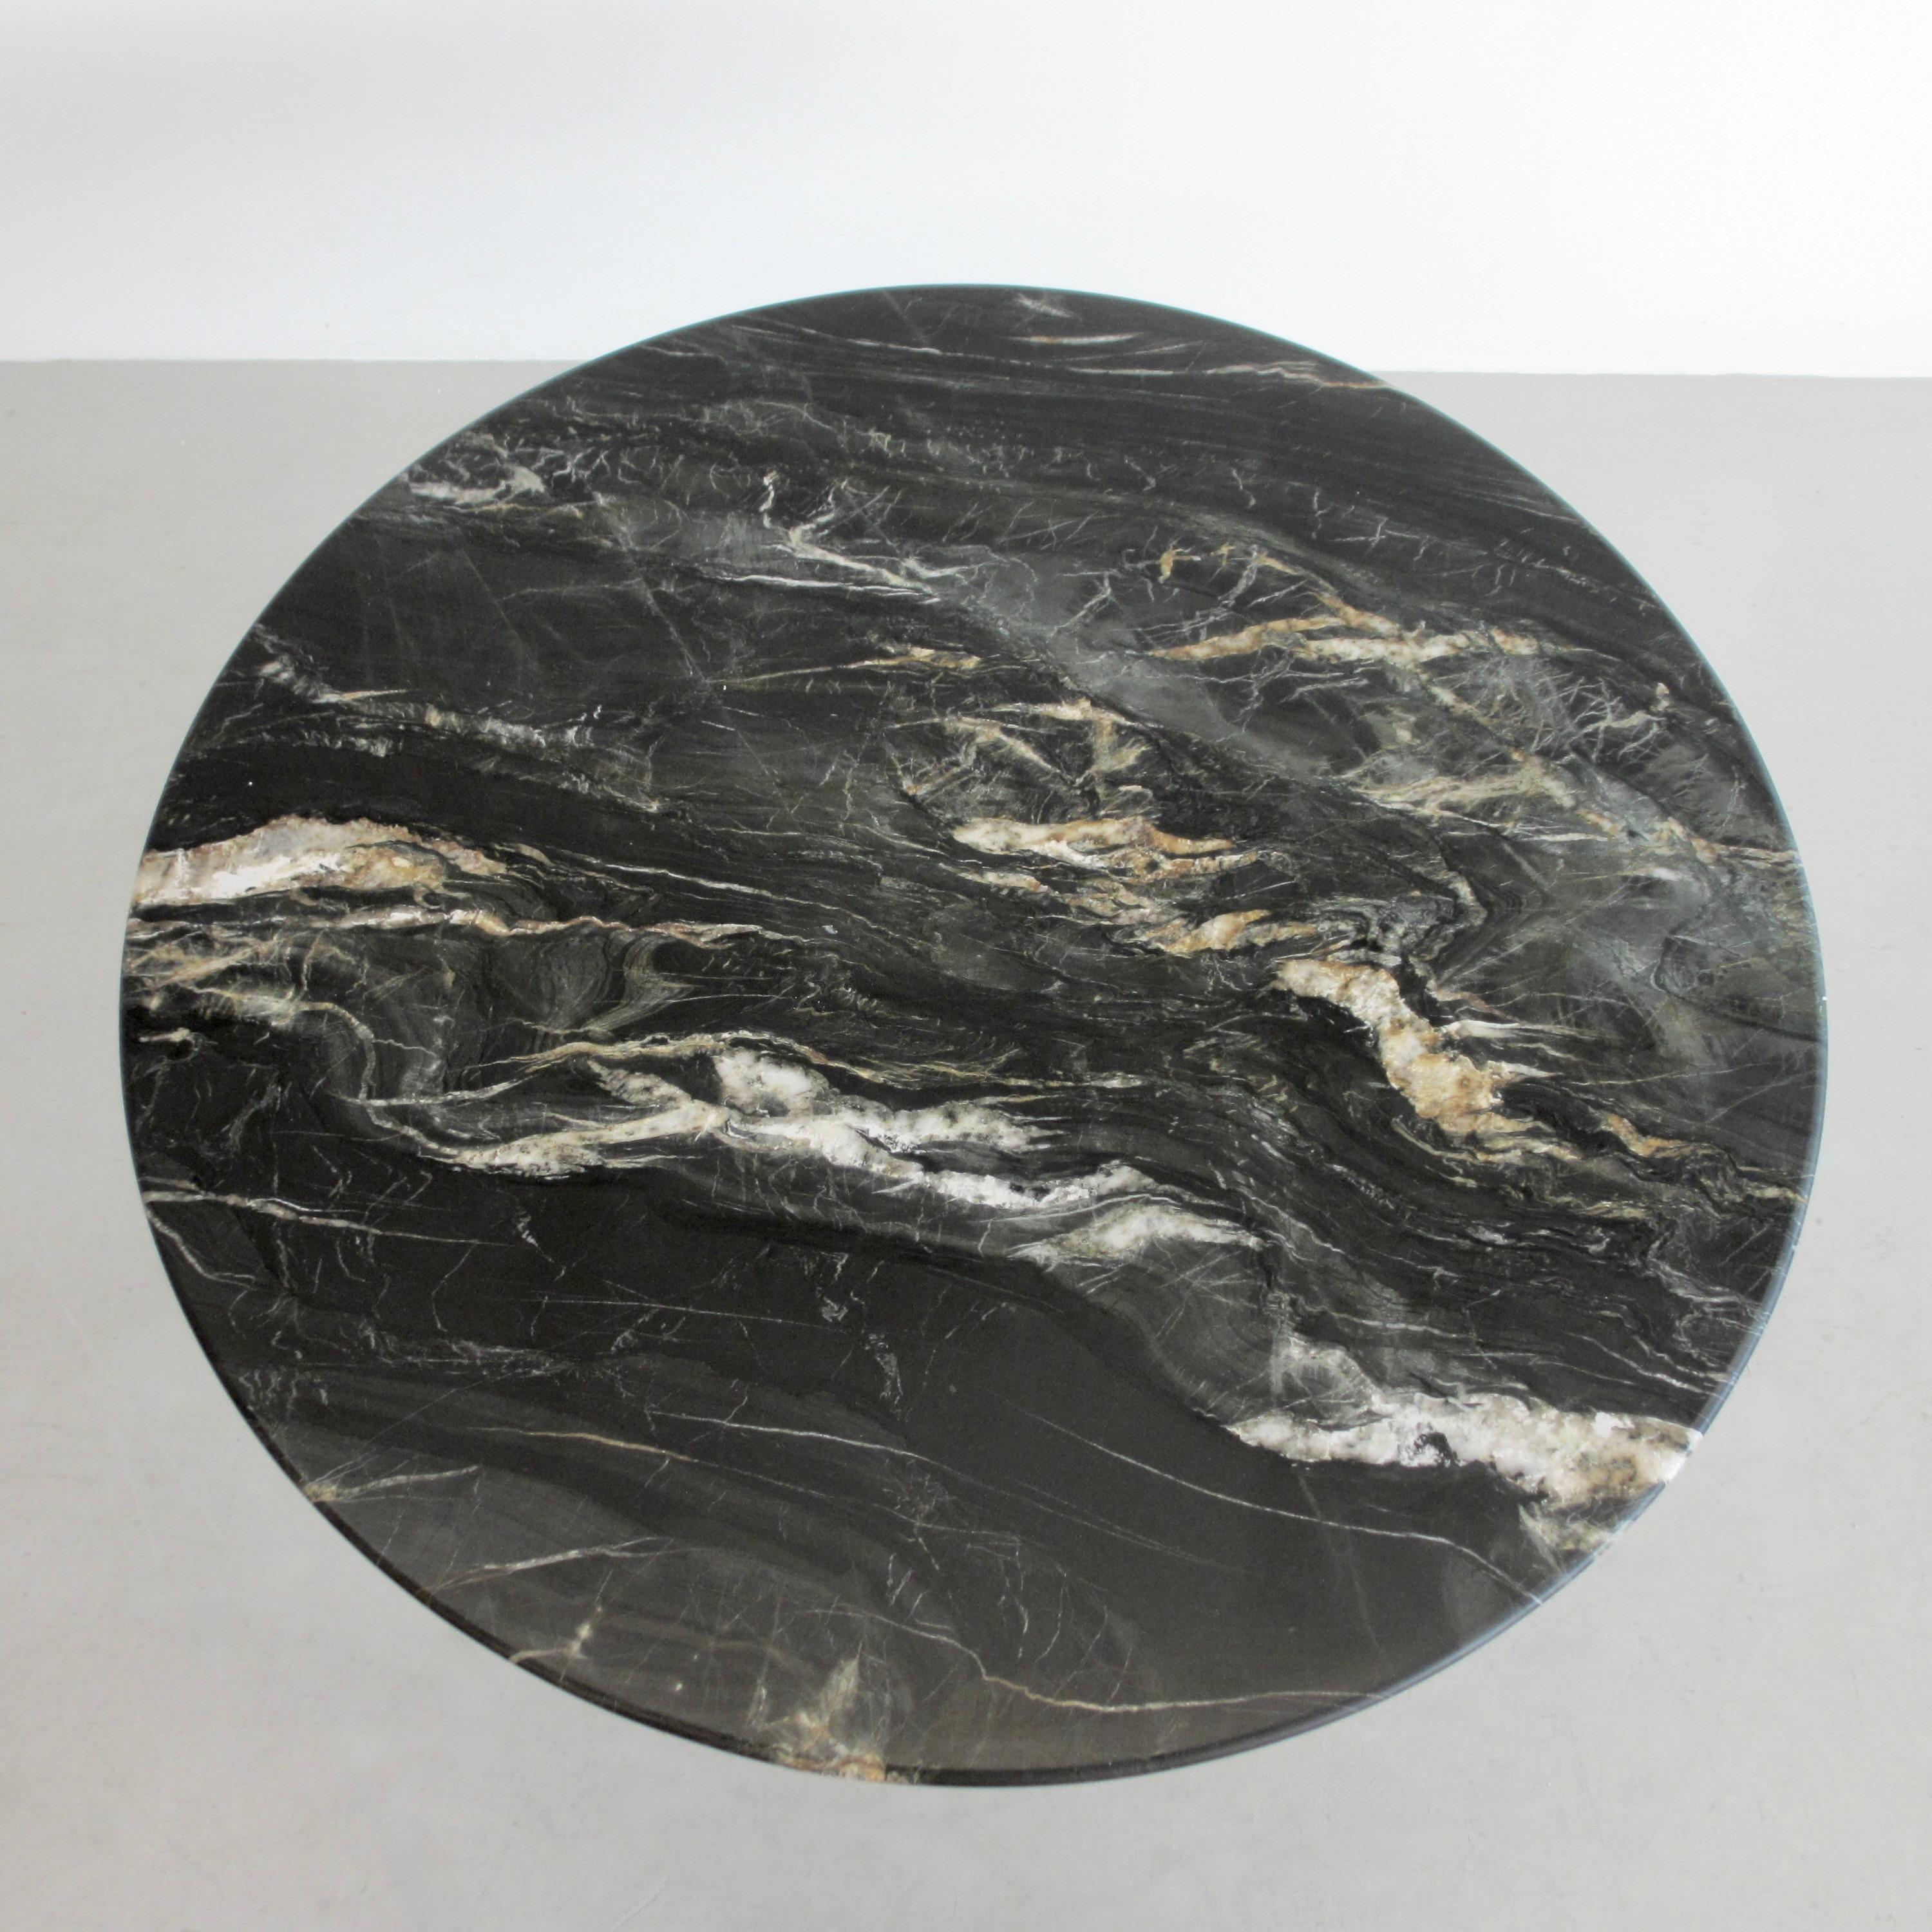 Table de salle à manger ronde en marbre (T69A) conçue par Osvaldo Borsani et Eugenio Gerli en 1963/64. Produit par TECNO.

Base en métal brossé, faces intérieures en émail noir mat. Plateau en marbre noir mat 'Belvedere' avec veines de différentes